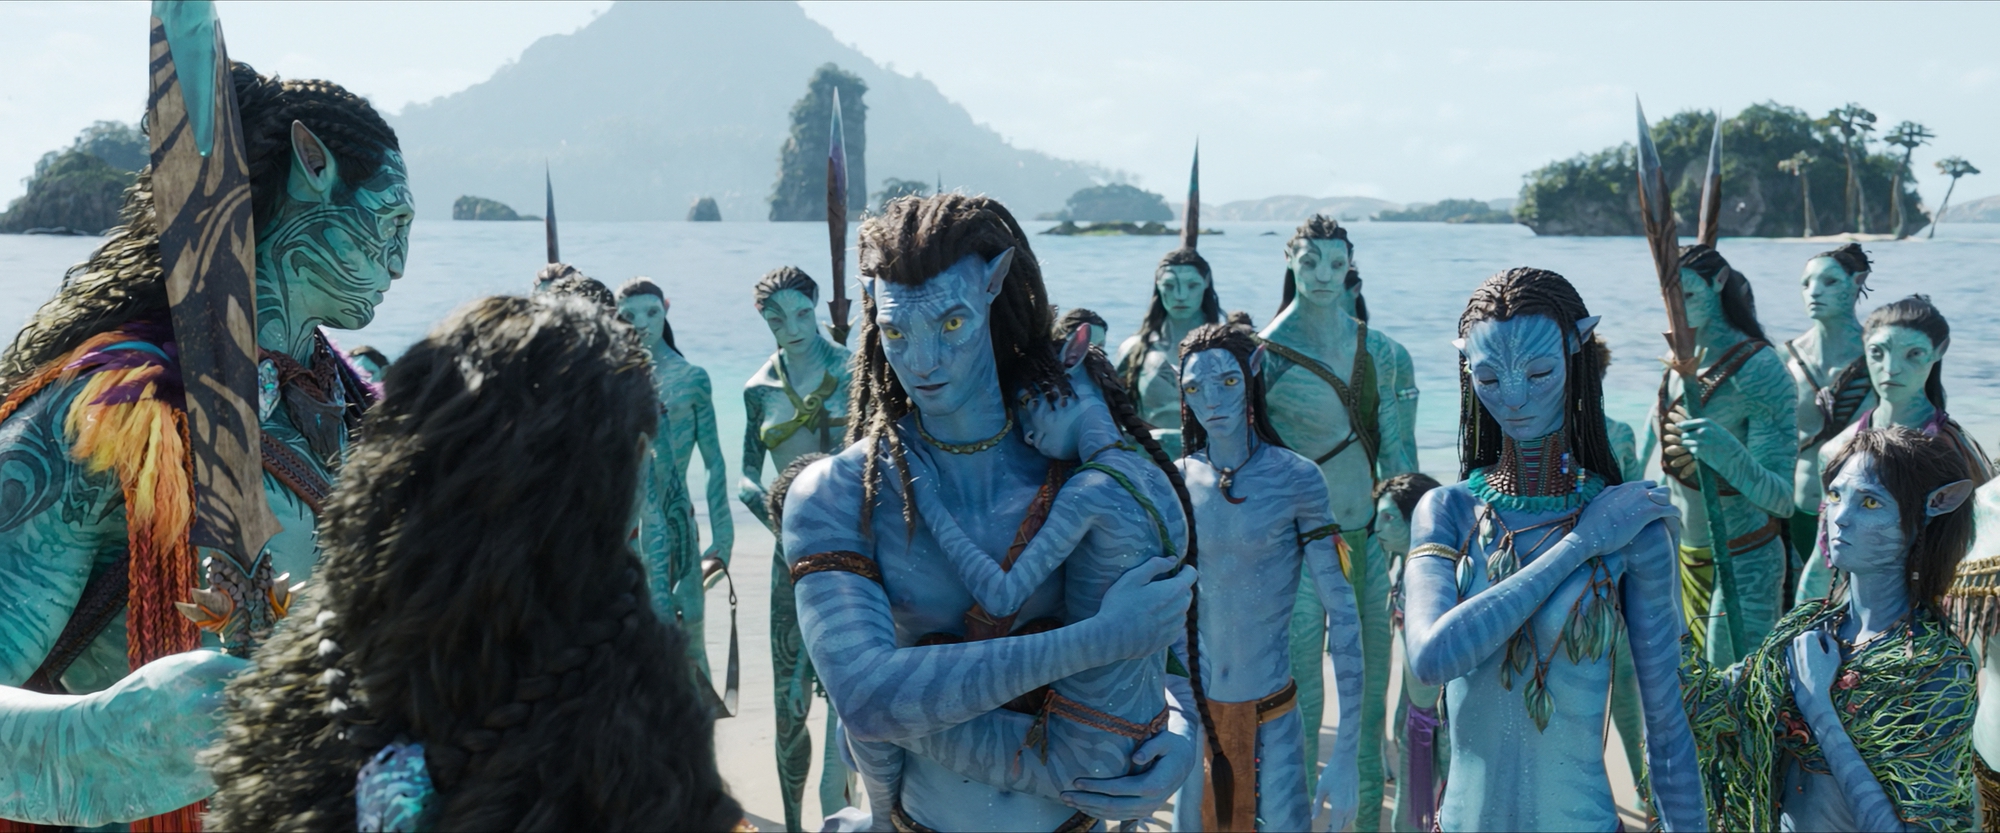 Avatar 2024 là bộ phim kỳ ảo đầy sáng tạo và tuyệt đẹp, mang đến cho người xem những trải nghiệm mãn nhãn và vô cùng ấn tượng. Với công nghệ 4K tiên tiến, những cảnh quay trong Avatar 2024 sẽ đưa bạn đến với thế giới mới lạ, tuyệt vời và đầy màu sắc. Các nhân vật trong phim sẽ khiến bạn đắm chìm vào câu chuyện tình yêu đầy cảm xúc, hành trình chinh phục sự sống của người anh hùng Jake Sully và đấu tranh cho sự bảo vệ của hành tinh Pandora. Đừng bỏ lỡ cơ hội chiêm ngưỡng những hình ảnh đầy sức mạnh và cảm hứng trong Avatar 2024.